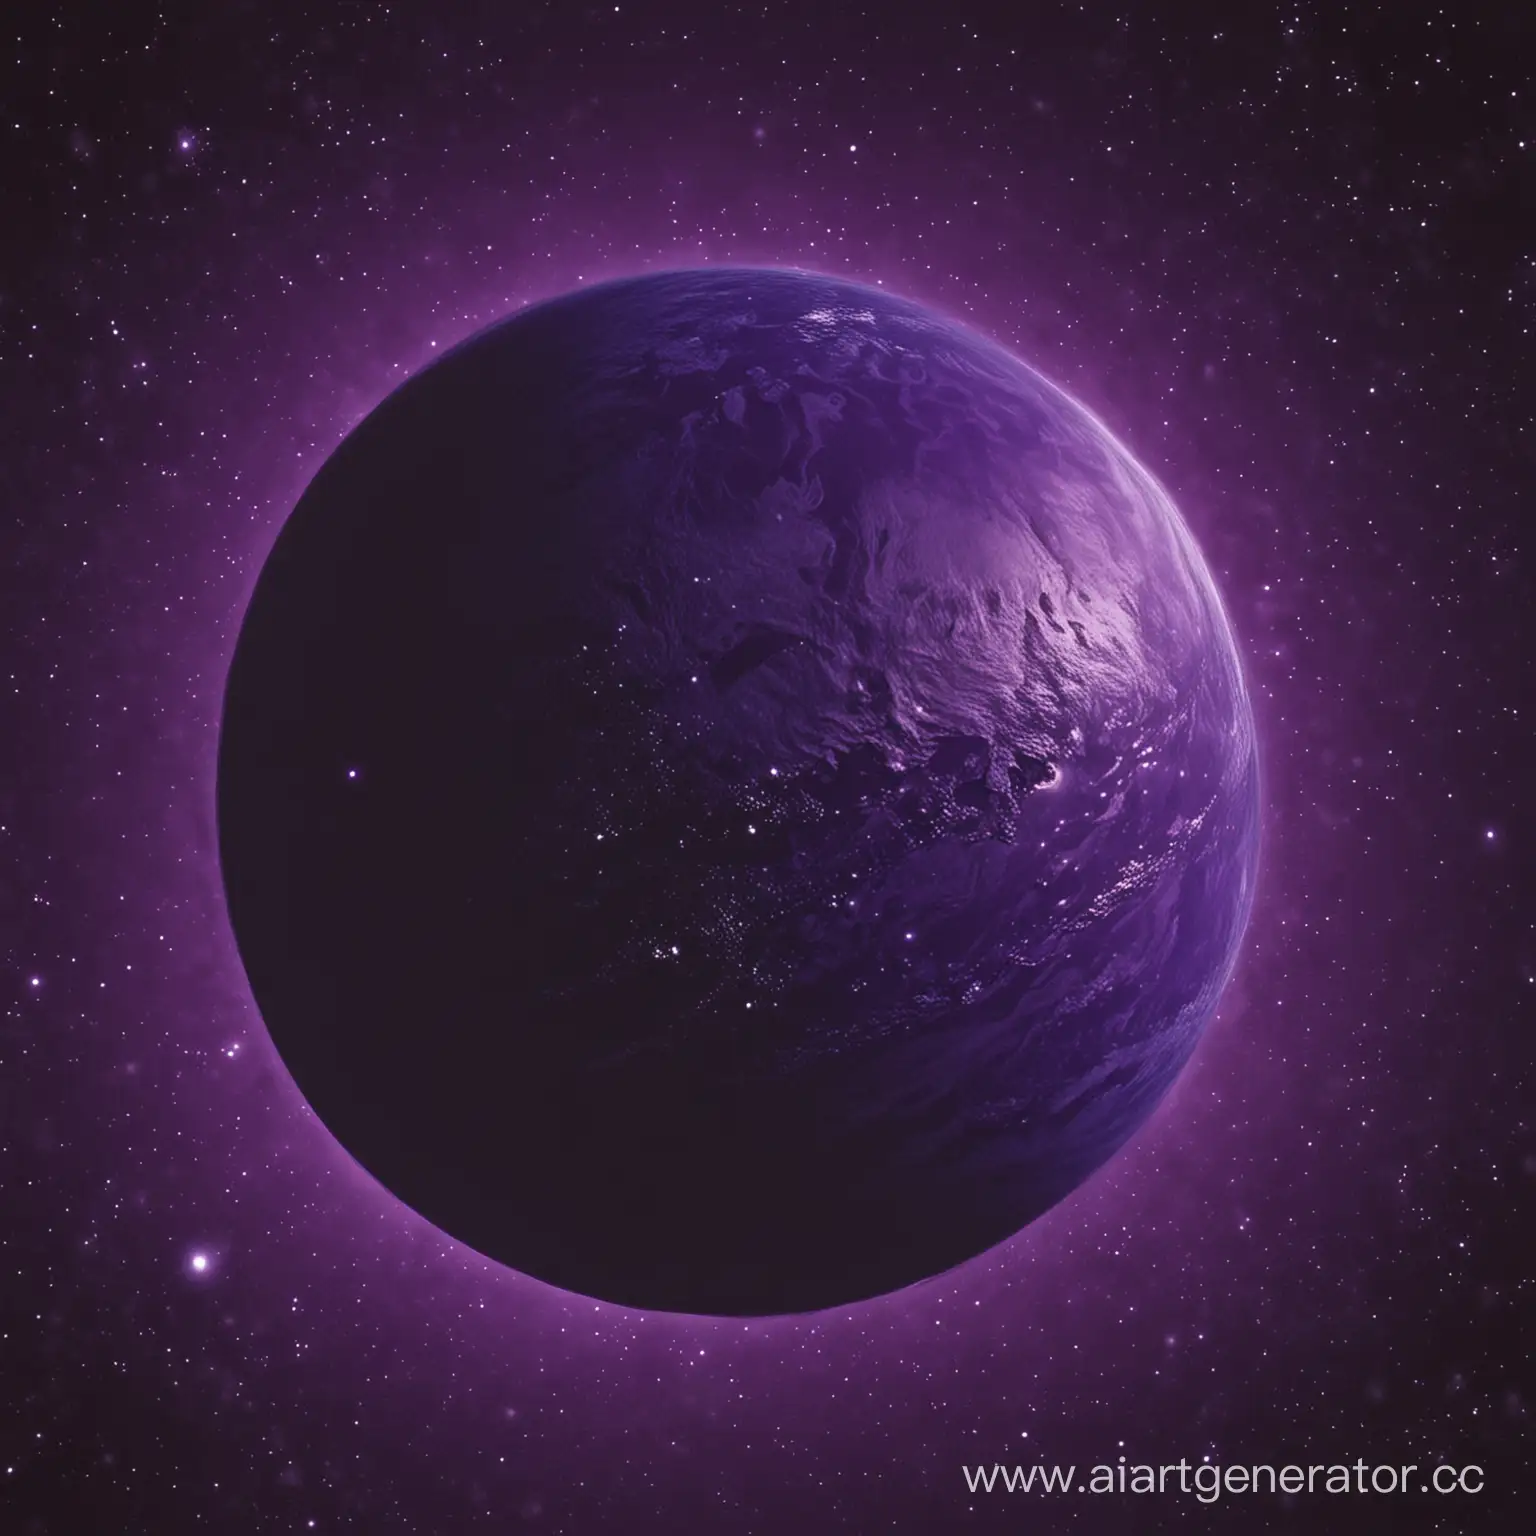 сделай мне аватарку где будет только какая нибудь темно фиолетовая планета на темно фиолетовом фоне,но планету сделай поменьше